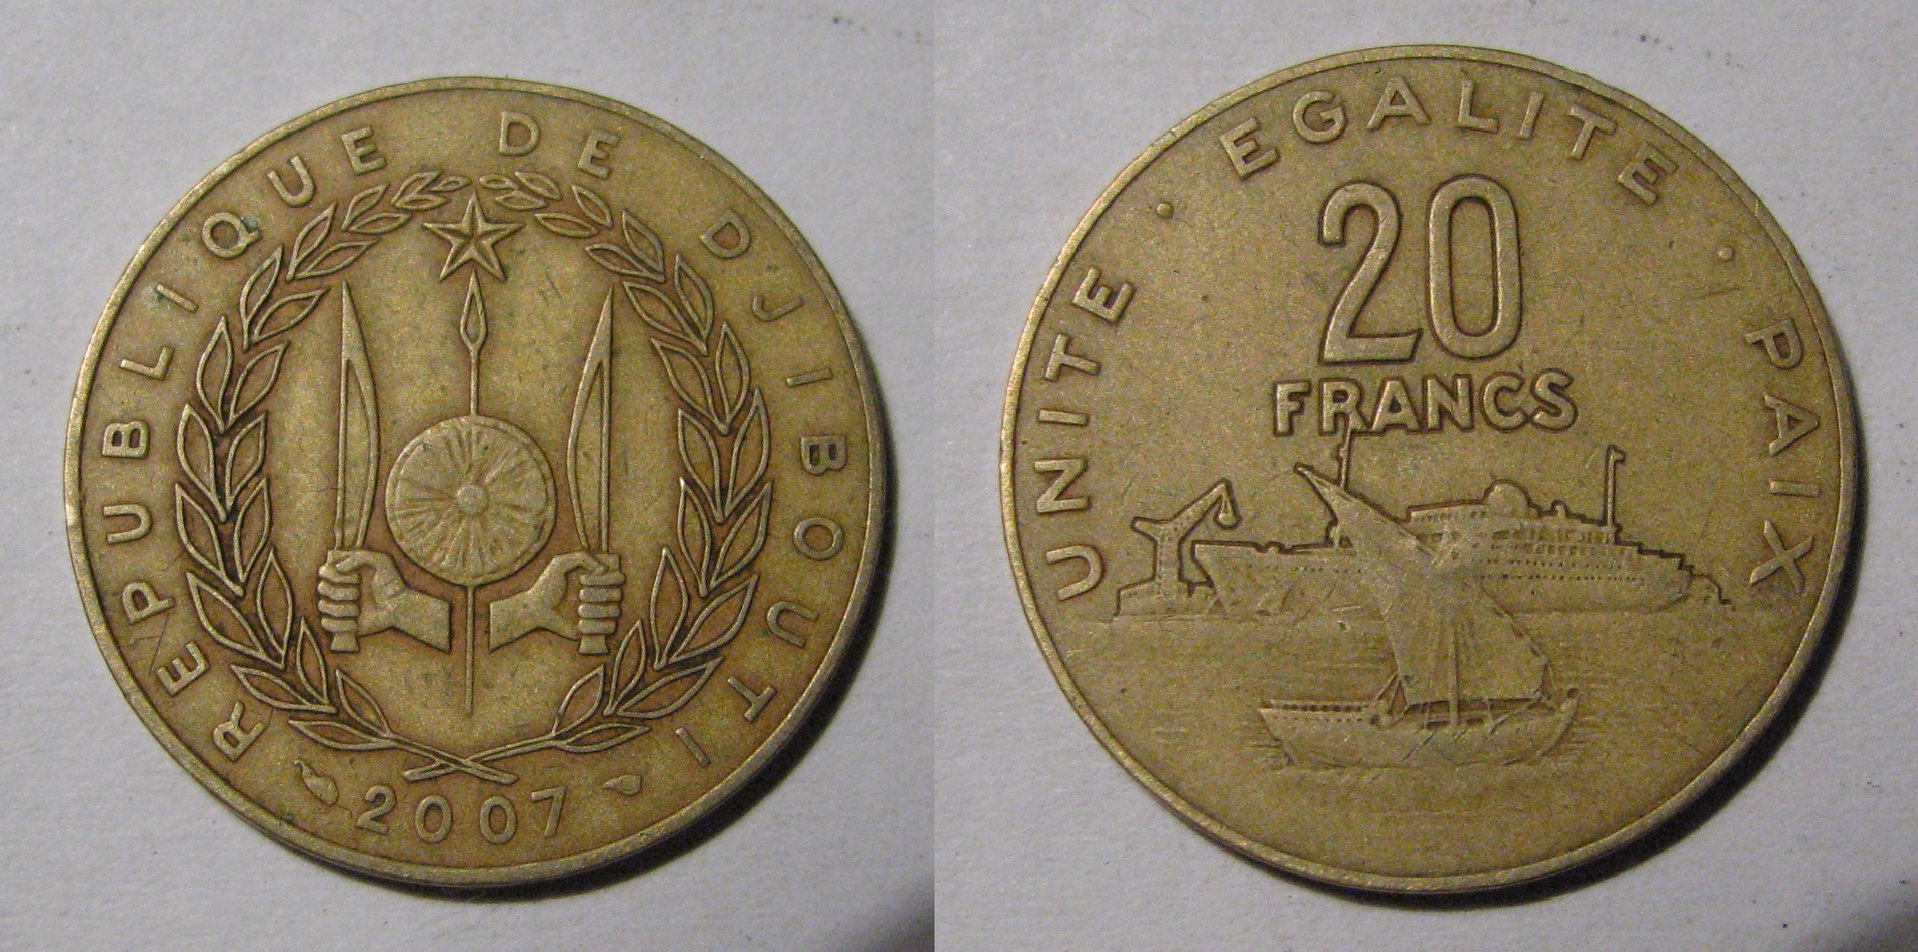 2007 Djibouti 20 Francs.jpg